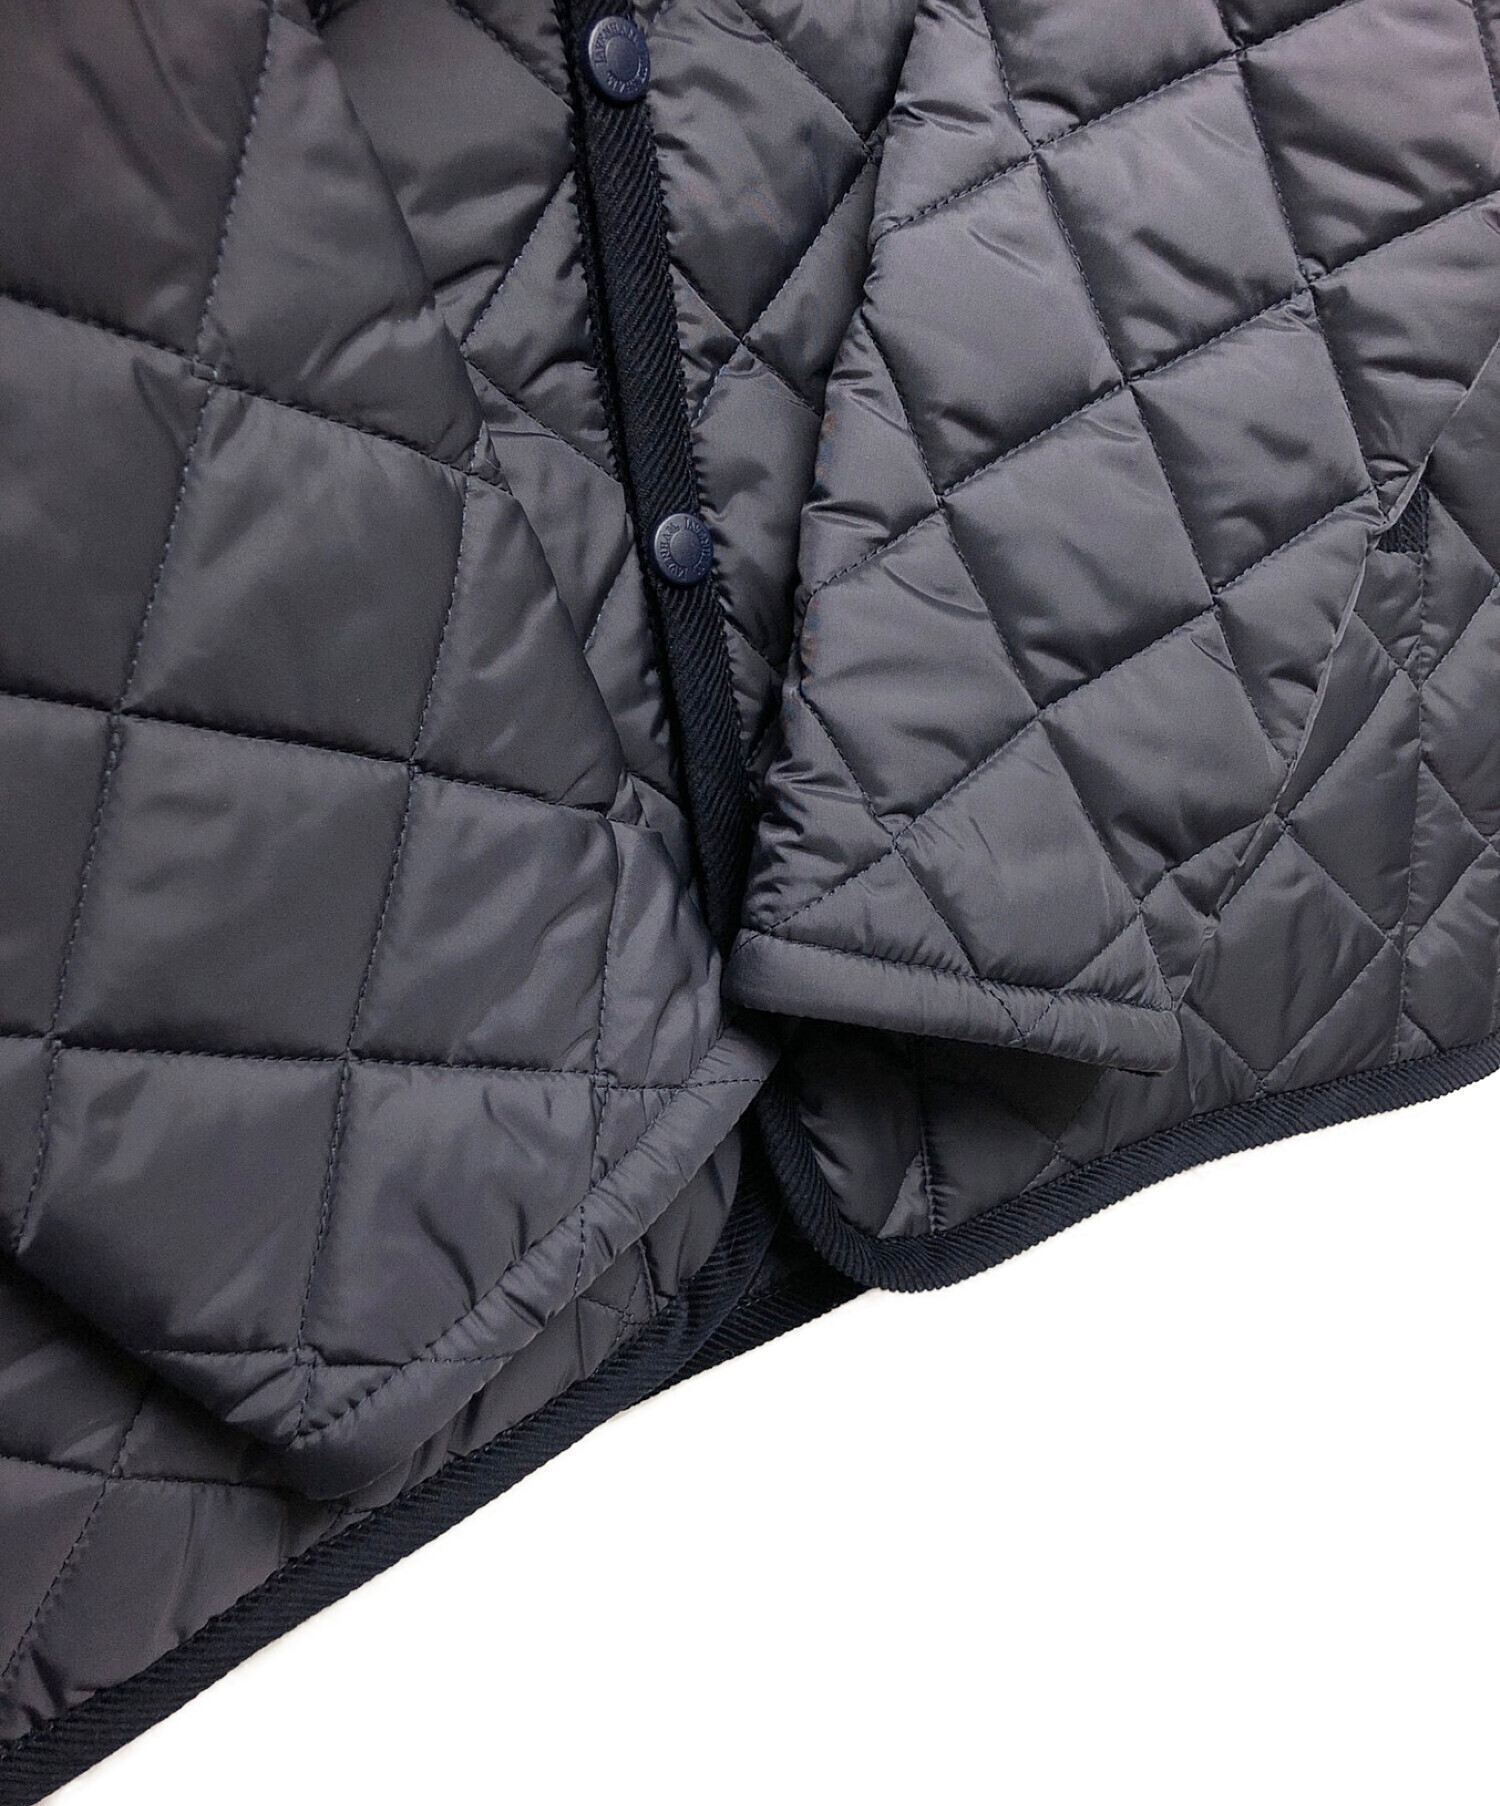 LAVENHAM (ラベンハム) キルティングジャケット ネイビー サイズ:10 未使用品